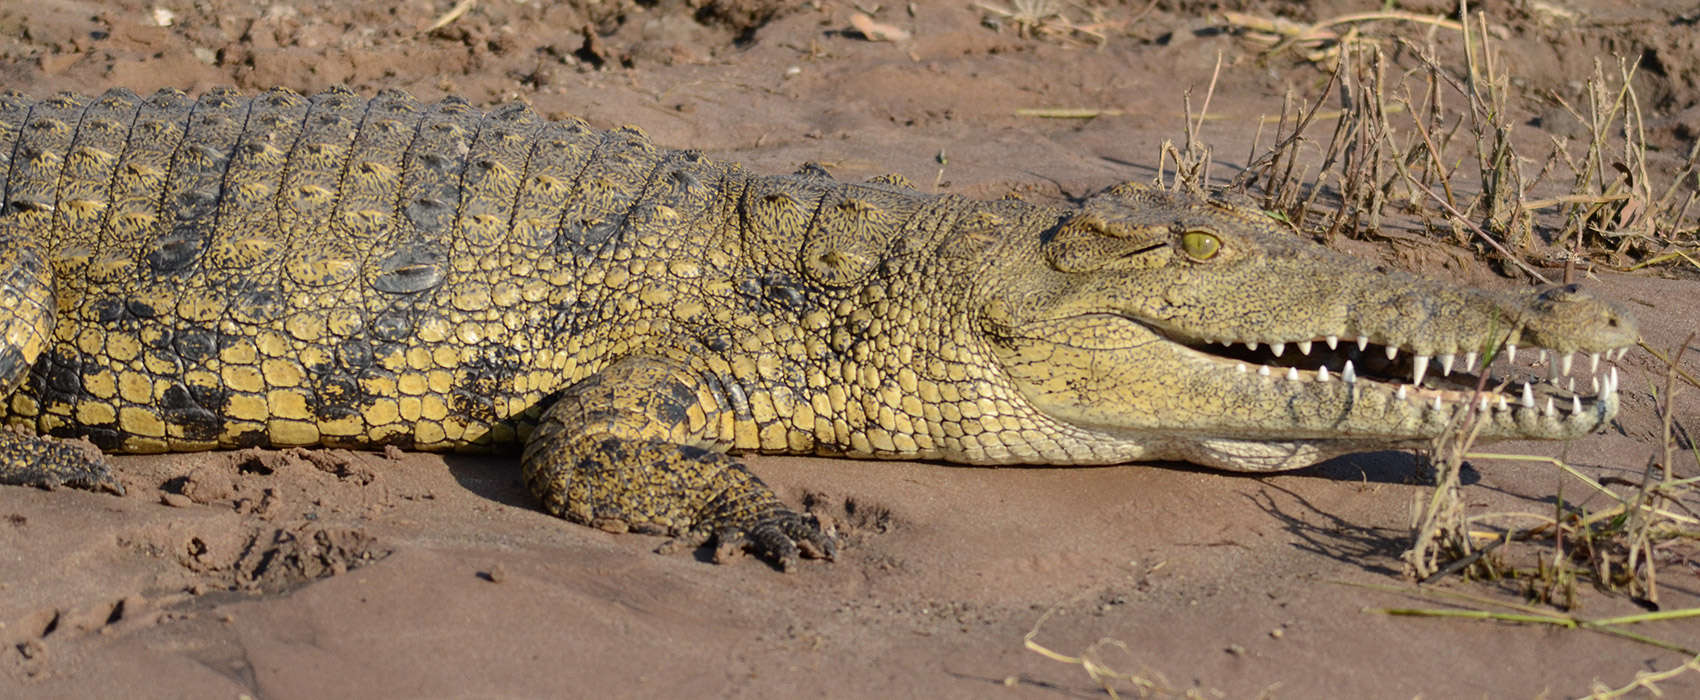 African Chobe National Park & Savute Safari crocodile